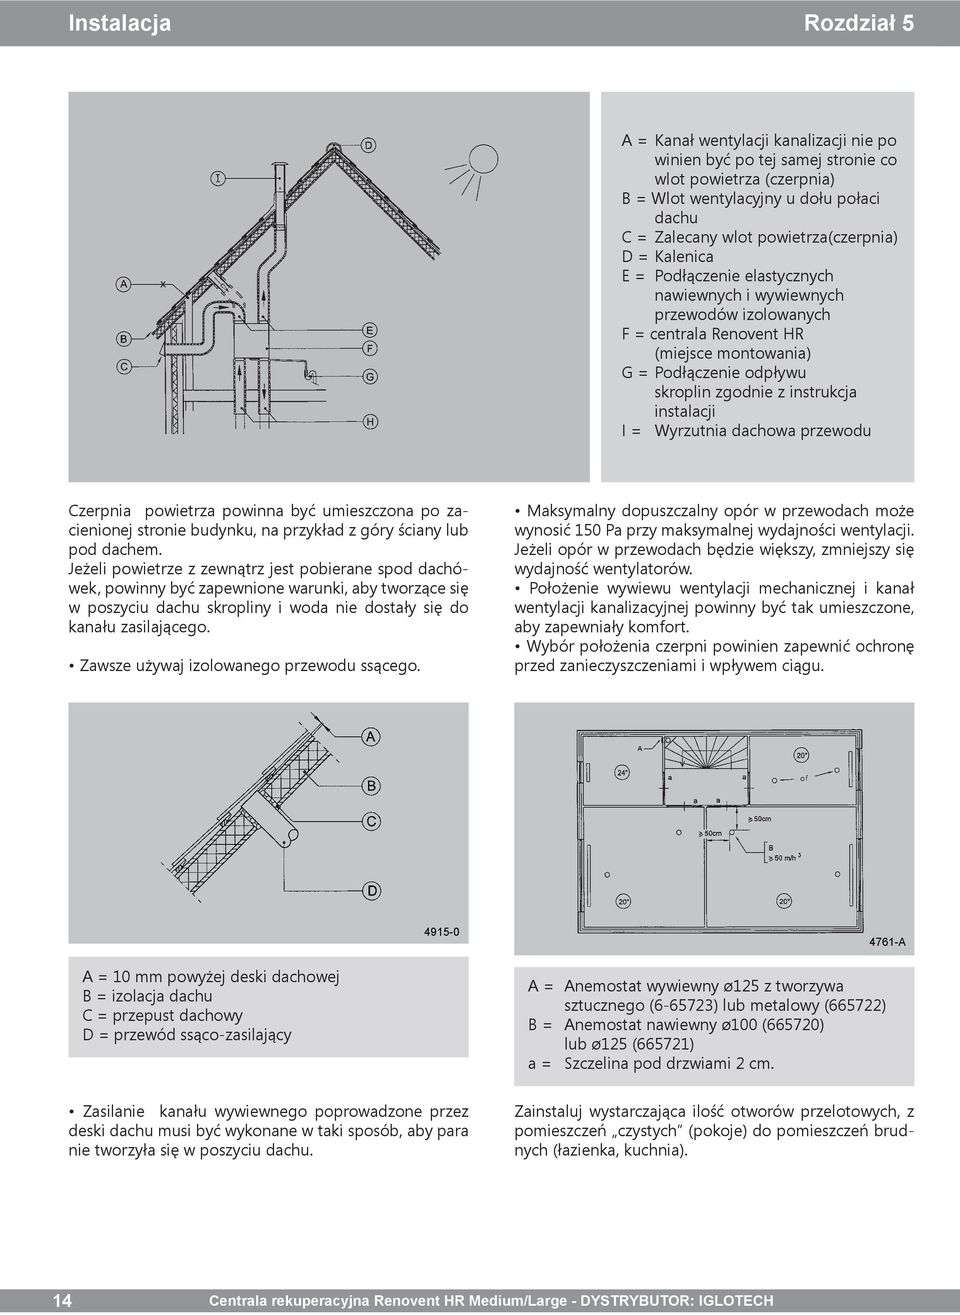 instrukcja instalacji I = Wyrzutnia dachowa przewodu Czerpnia powietrza powinna być umieszczona po zacienionej stronie budynku, na przykład z góry ściany lub pod dachem.